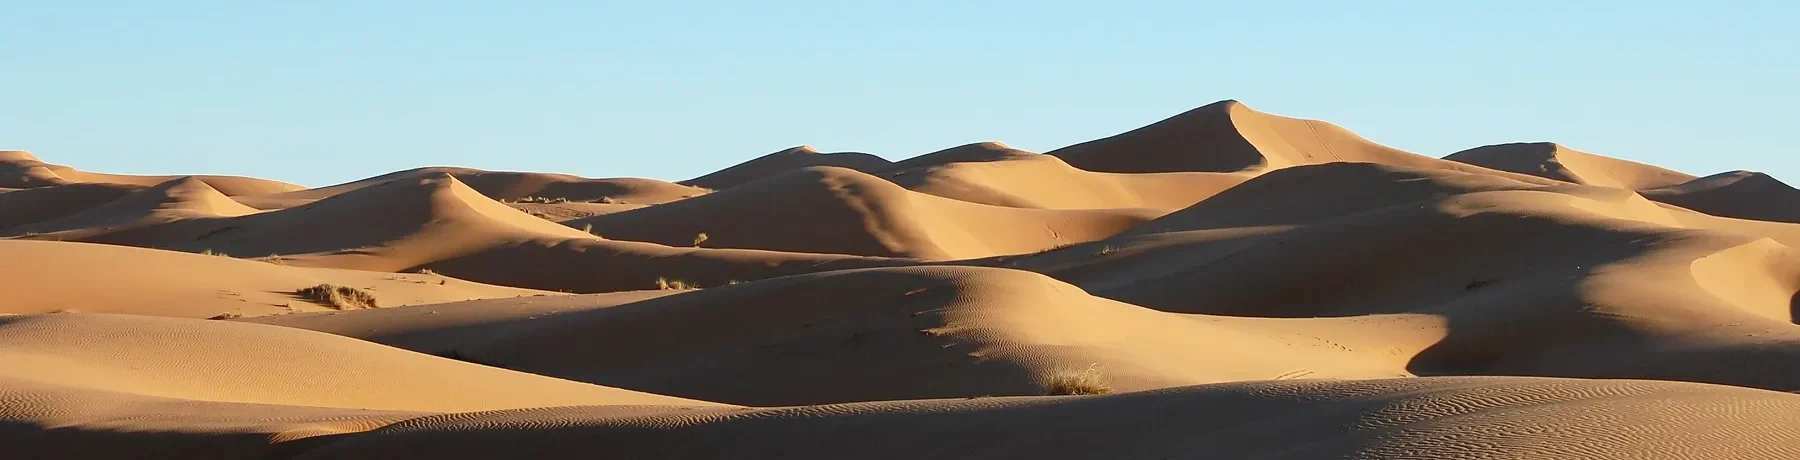 wide-shot-sand-dunes-desert-daytime-1800W